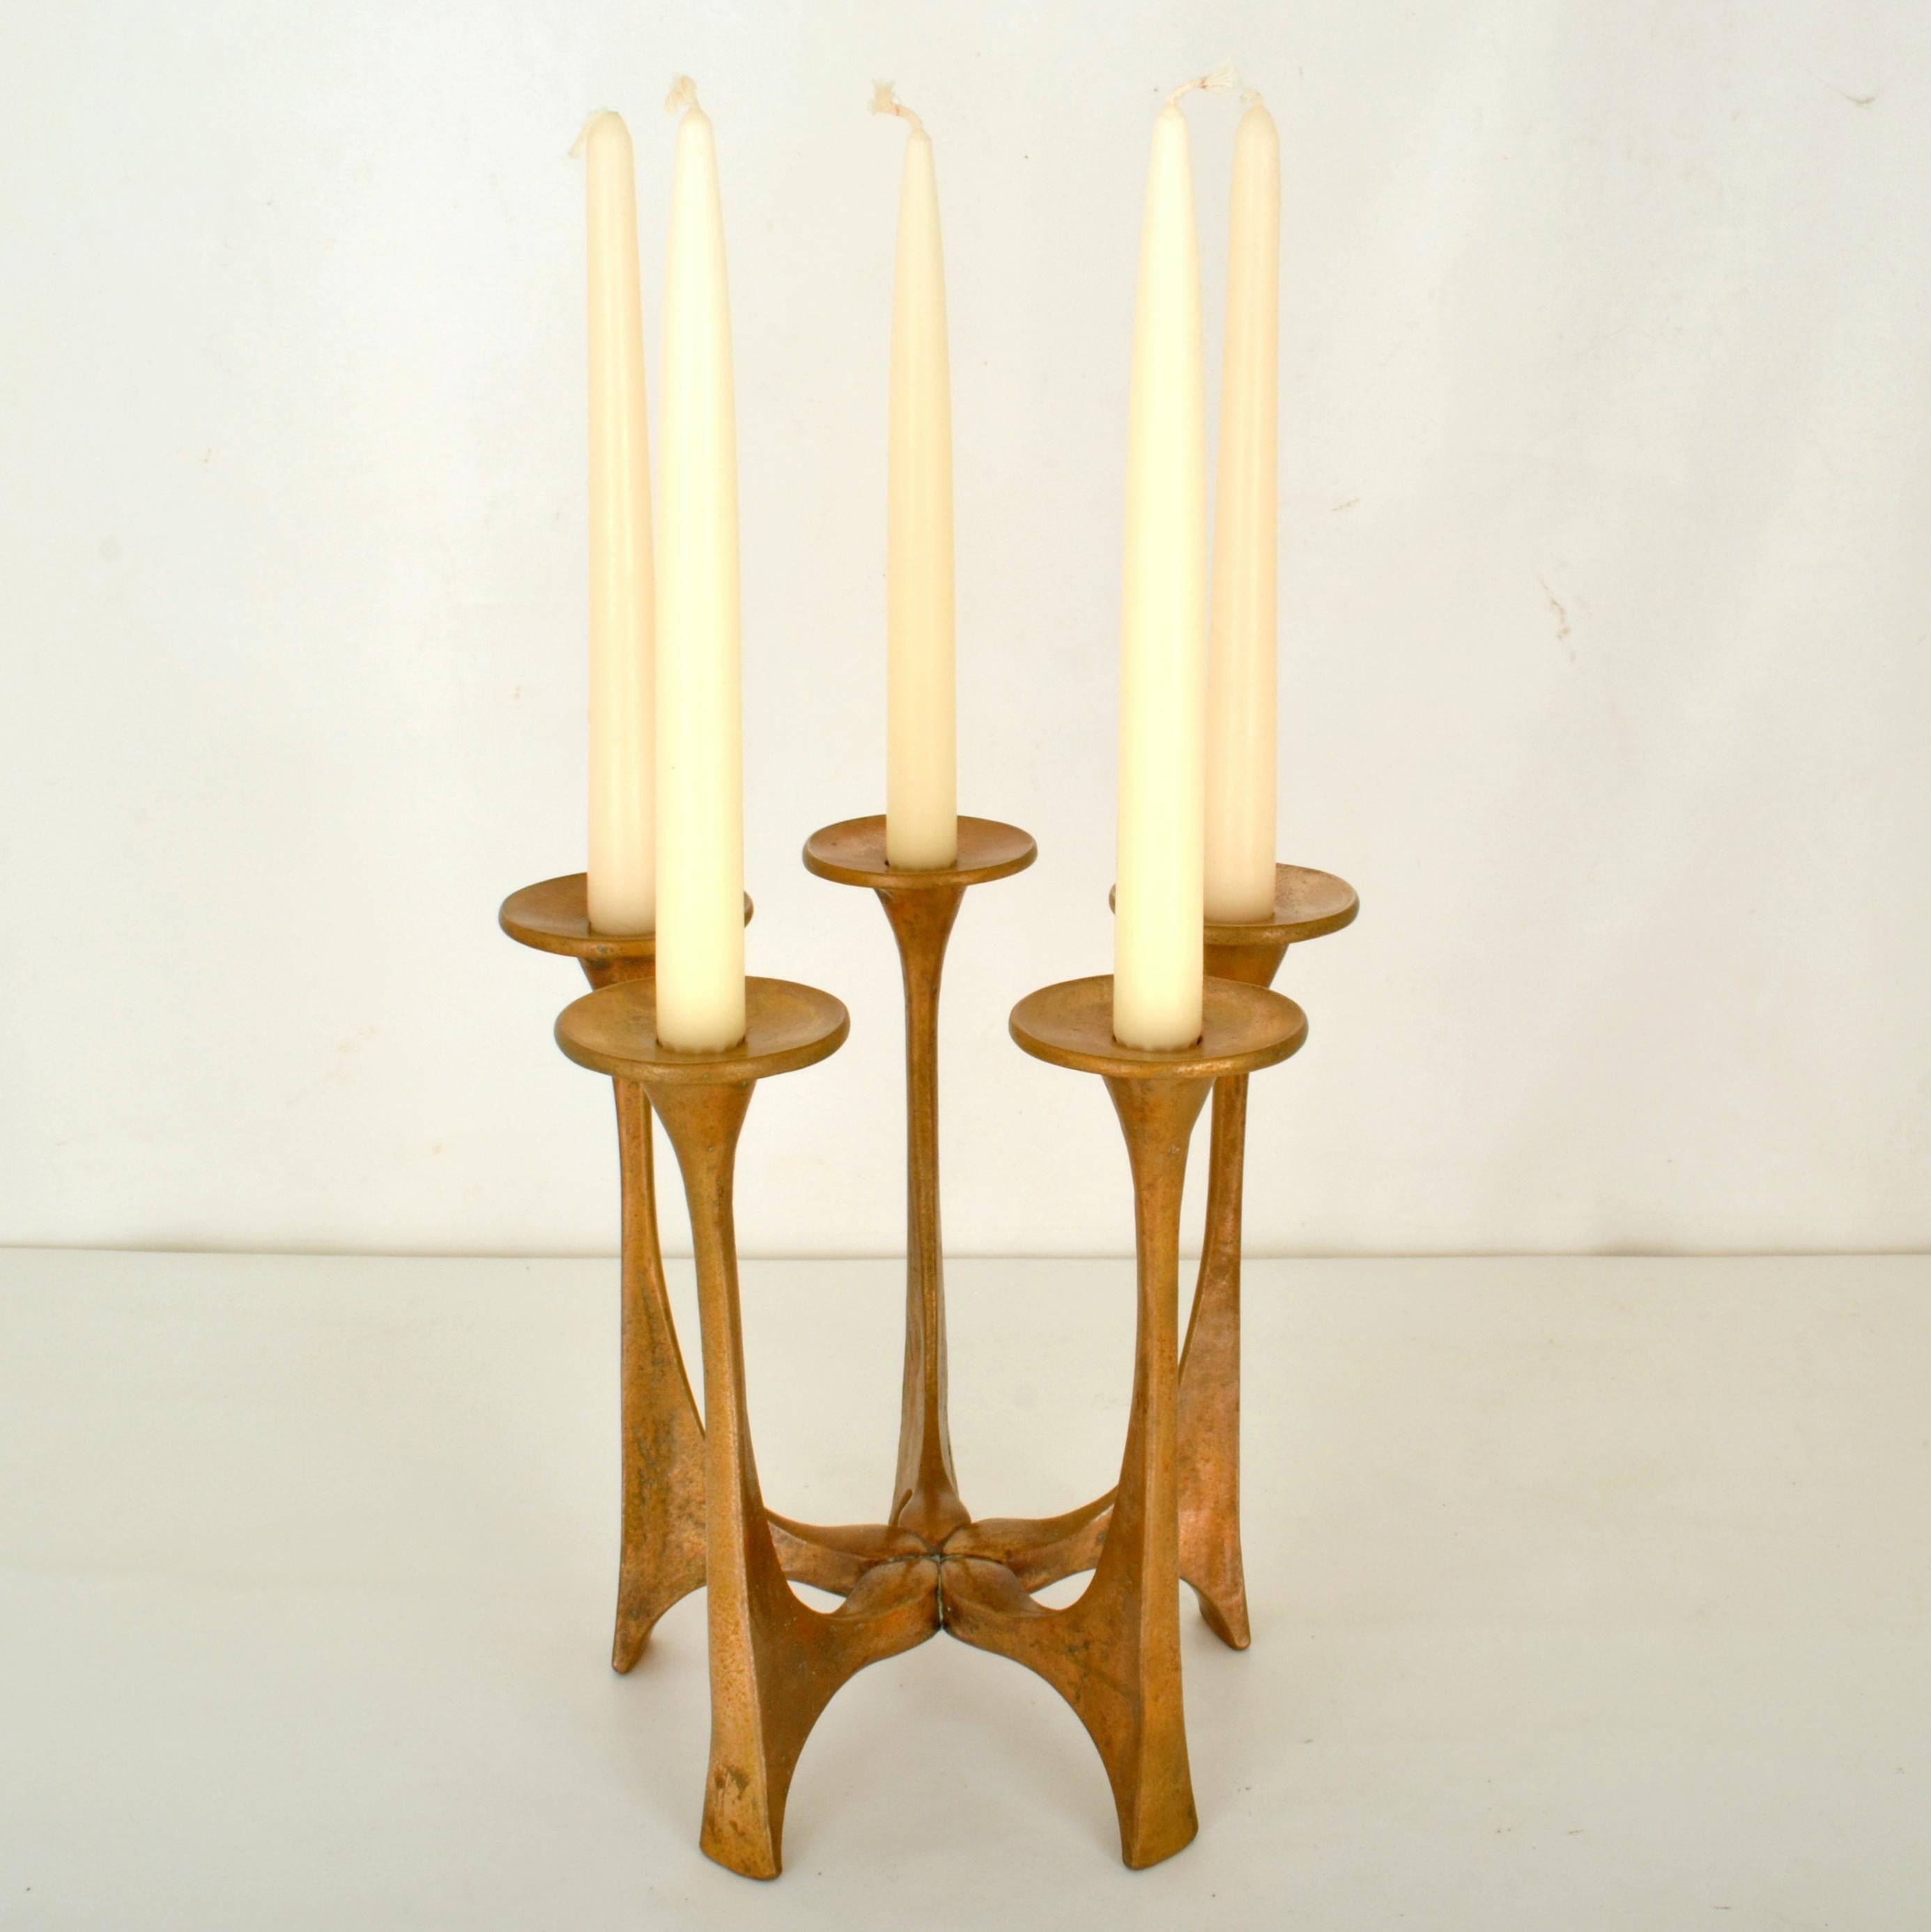 Chandelier en fonte de bronze composé de cinq bras rayonnants en fonte de bronze avec des chandeliers en forme de soucoupe pour des bougies ordinaires. Il est conçu par Michael Harjes (1926-2006) et produit par Harjes Metalkunst (1912), l'entreprise